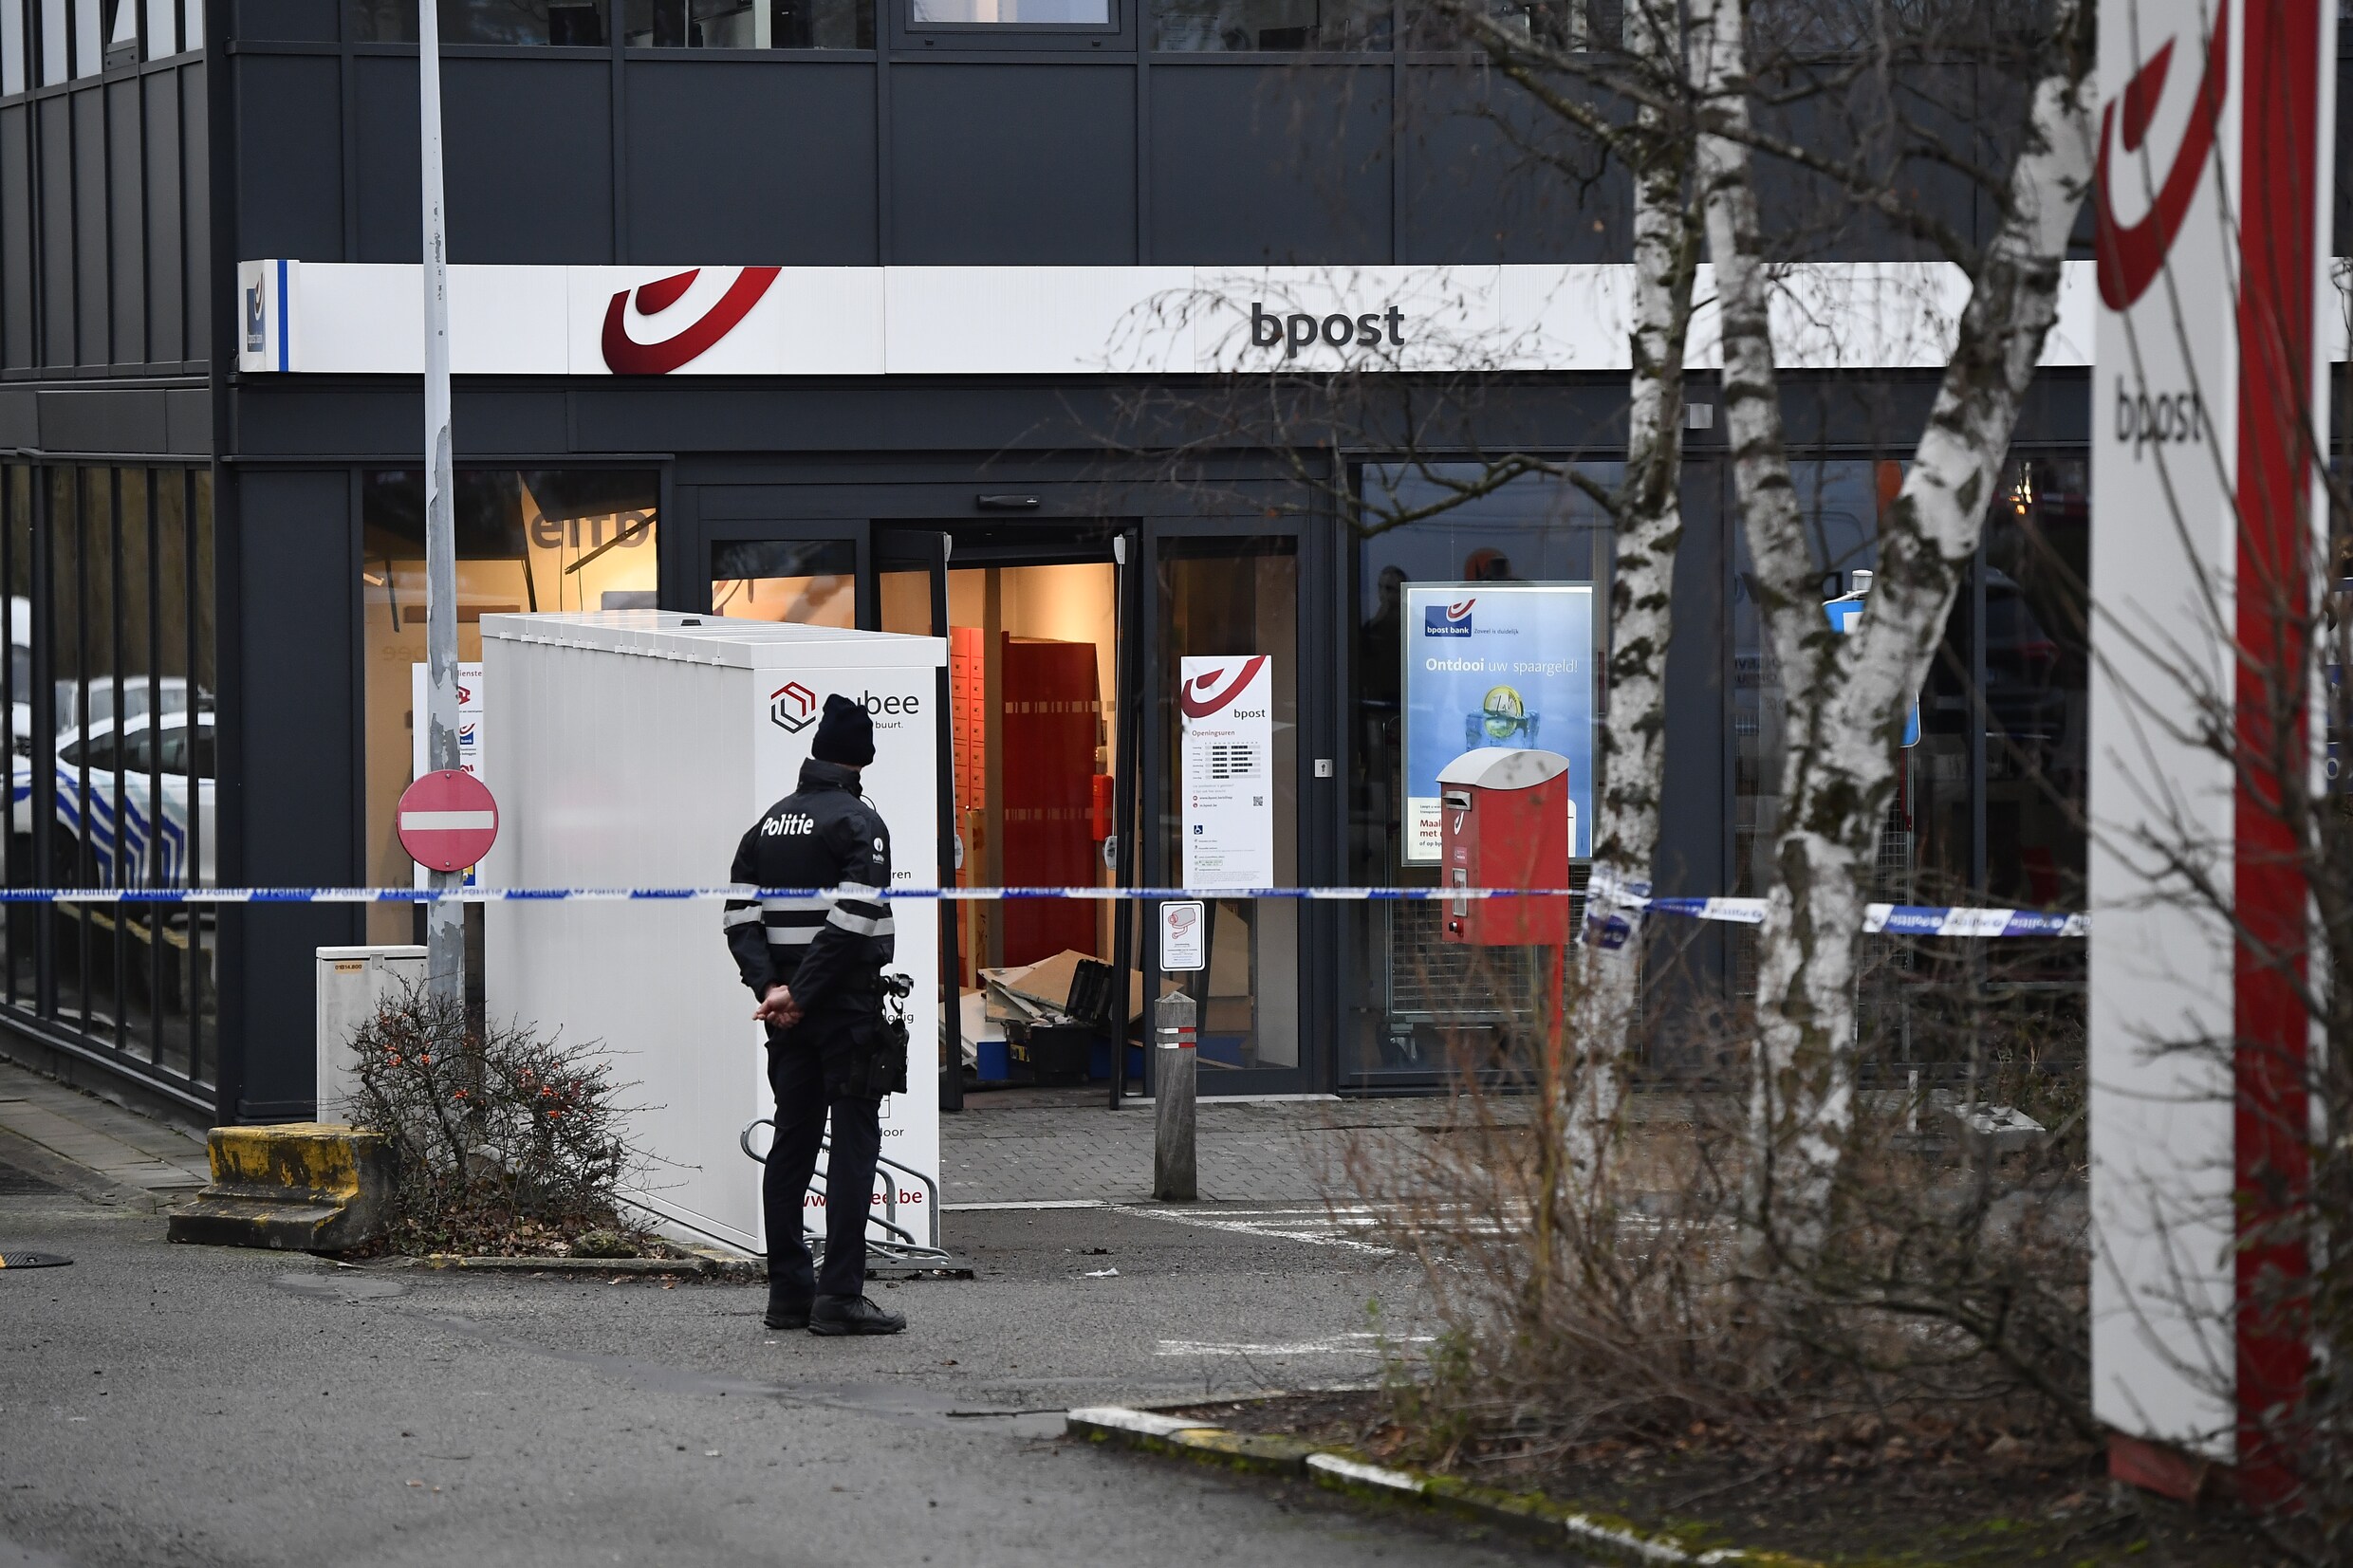 Plofkraak op bpost-kantoor in Zaventem: daders weg met onbekende buit